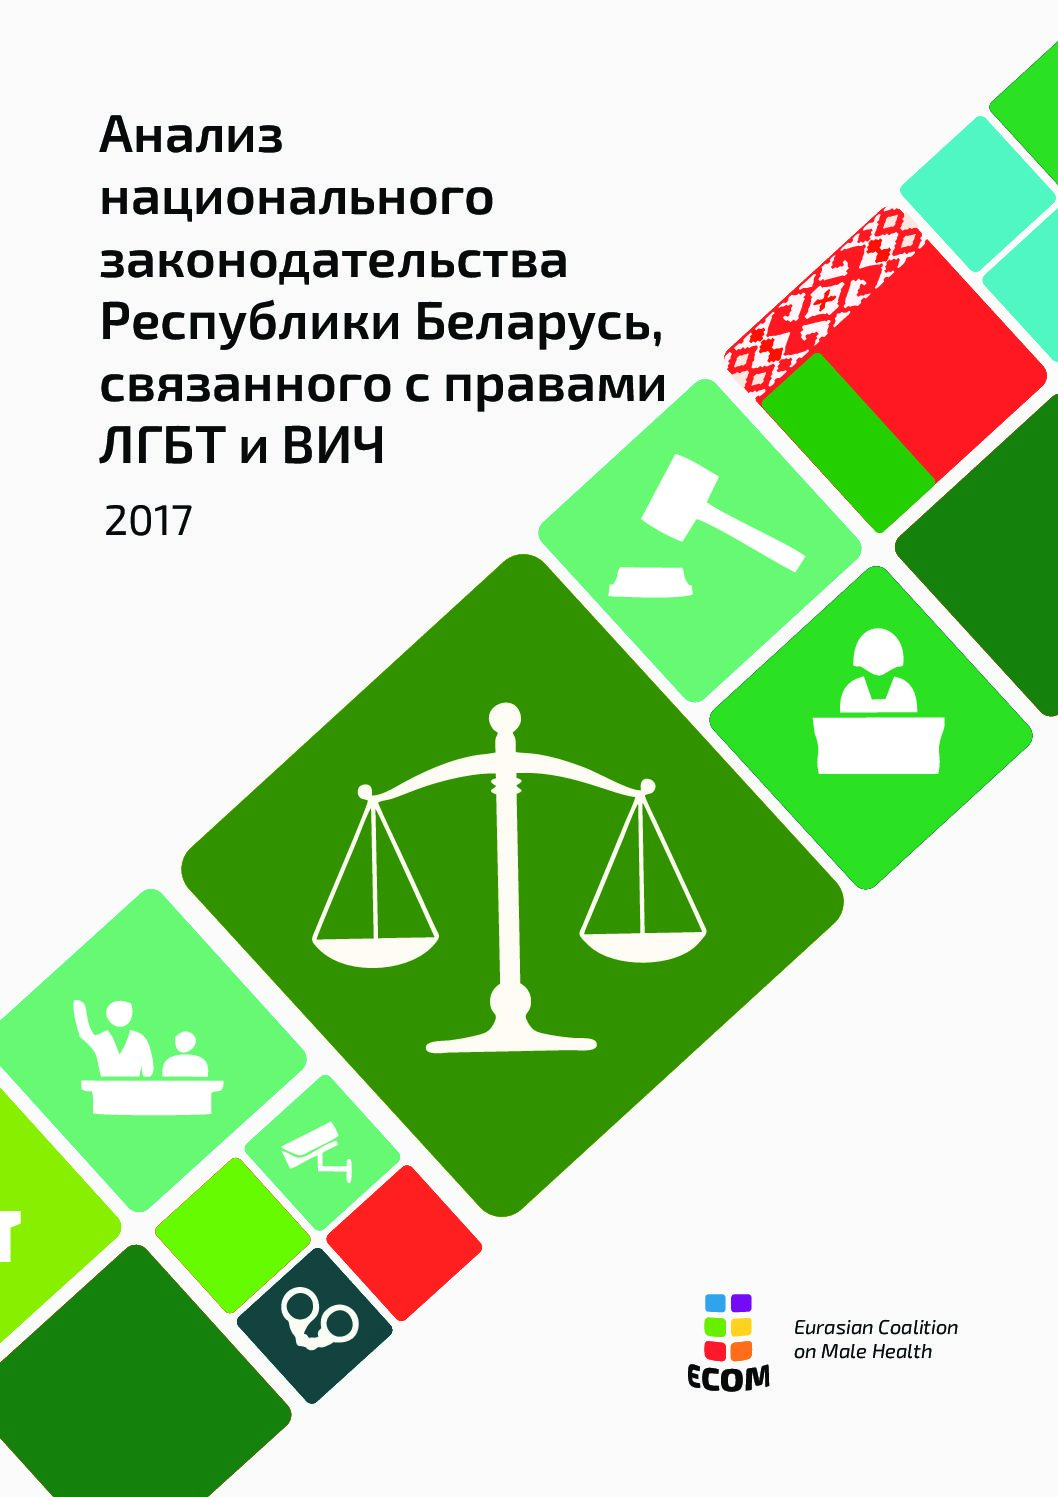 Анализ национального законодательства Республики Беларусь, связанного с правами ЛГБТ и ВИЧ